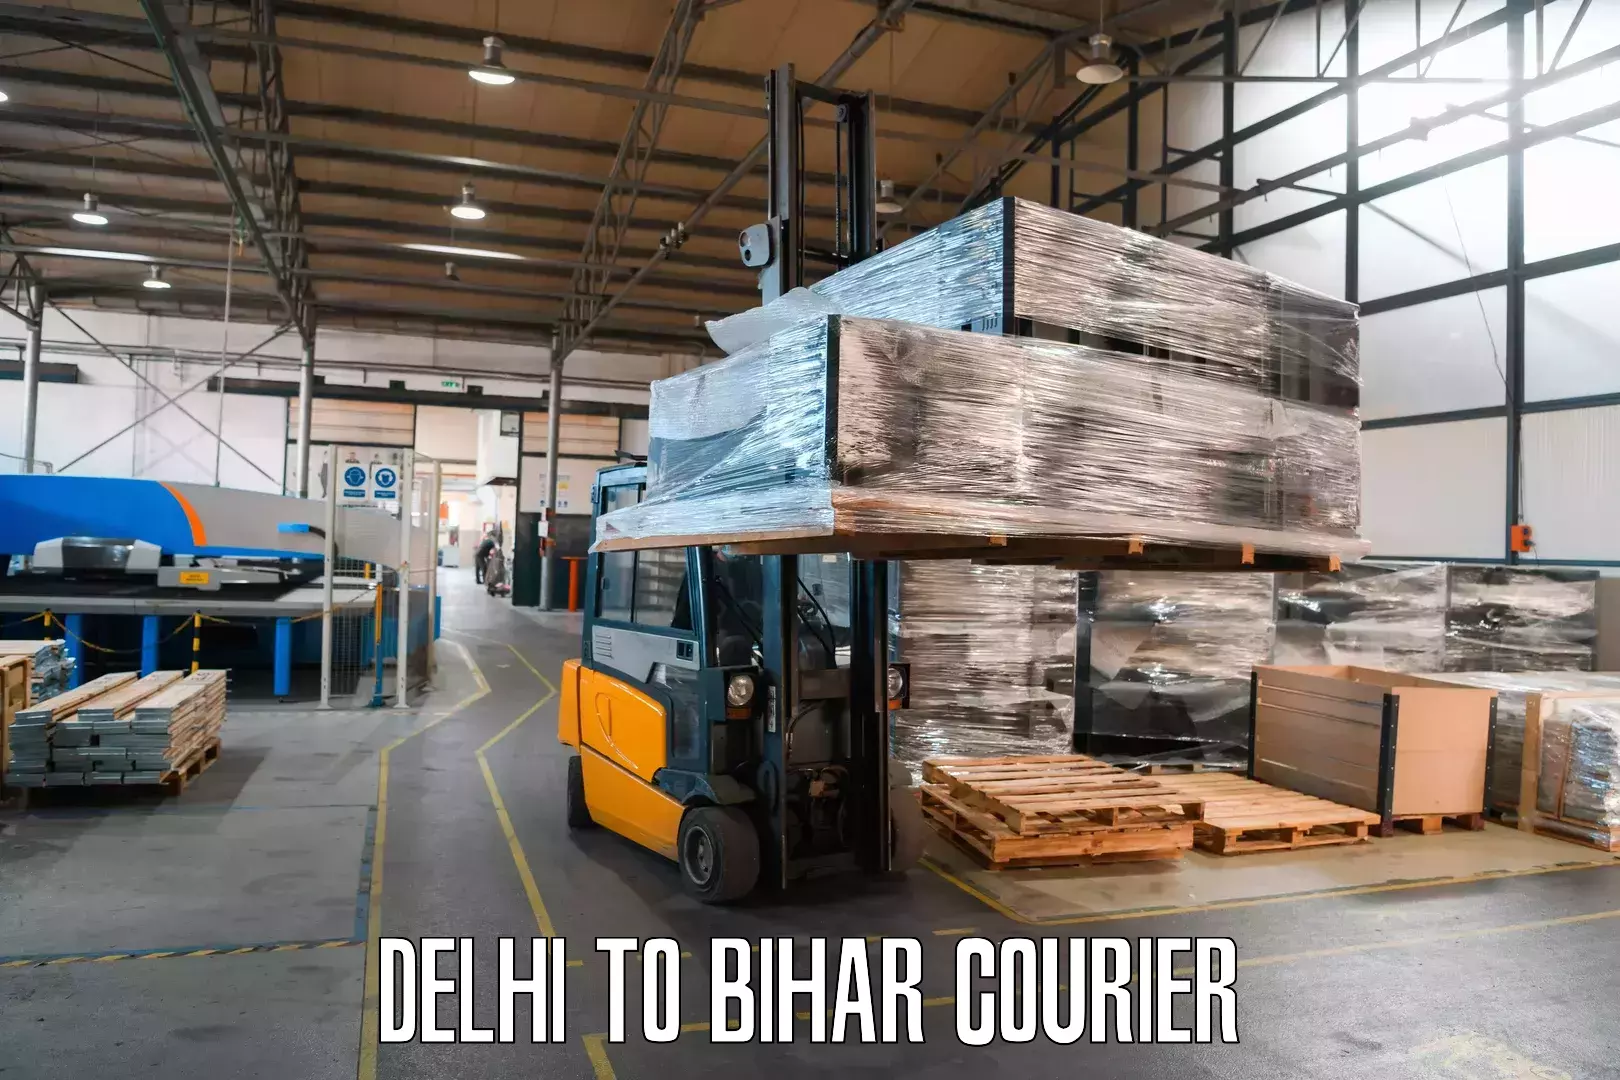 User-friendly delivery service Delhi to Bihar